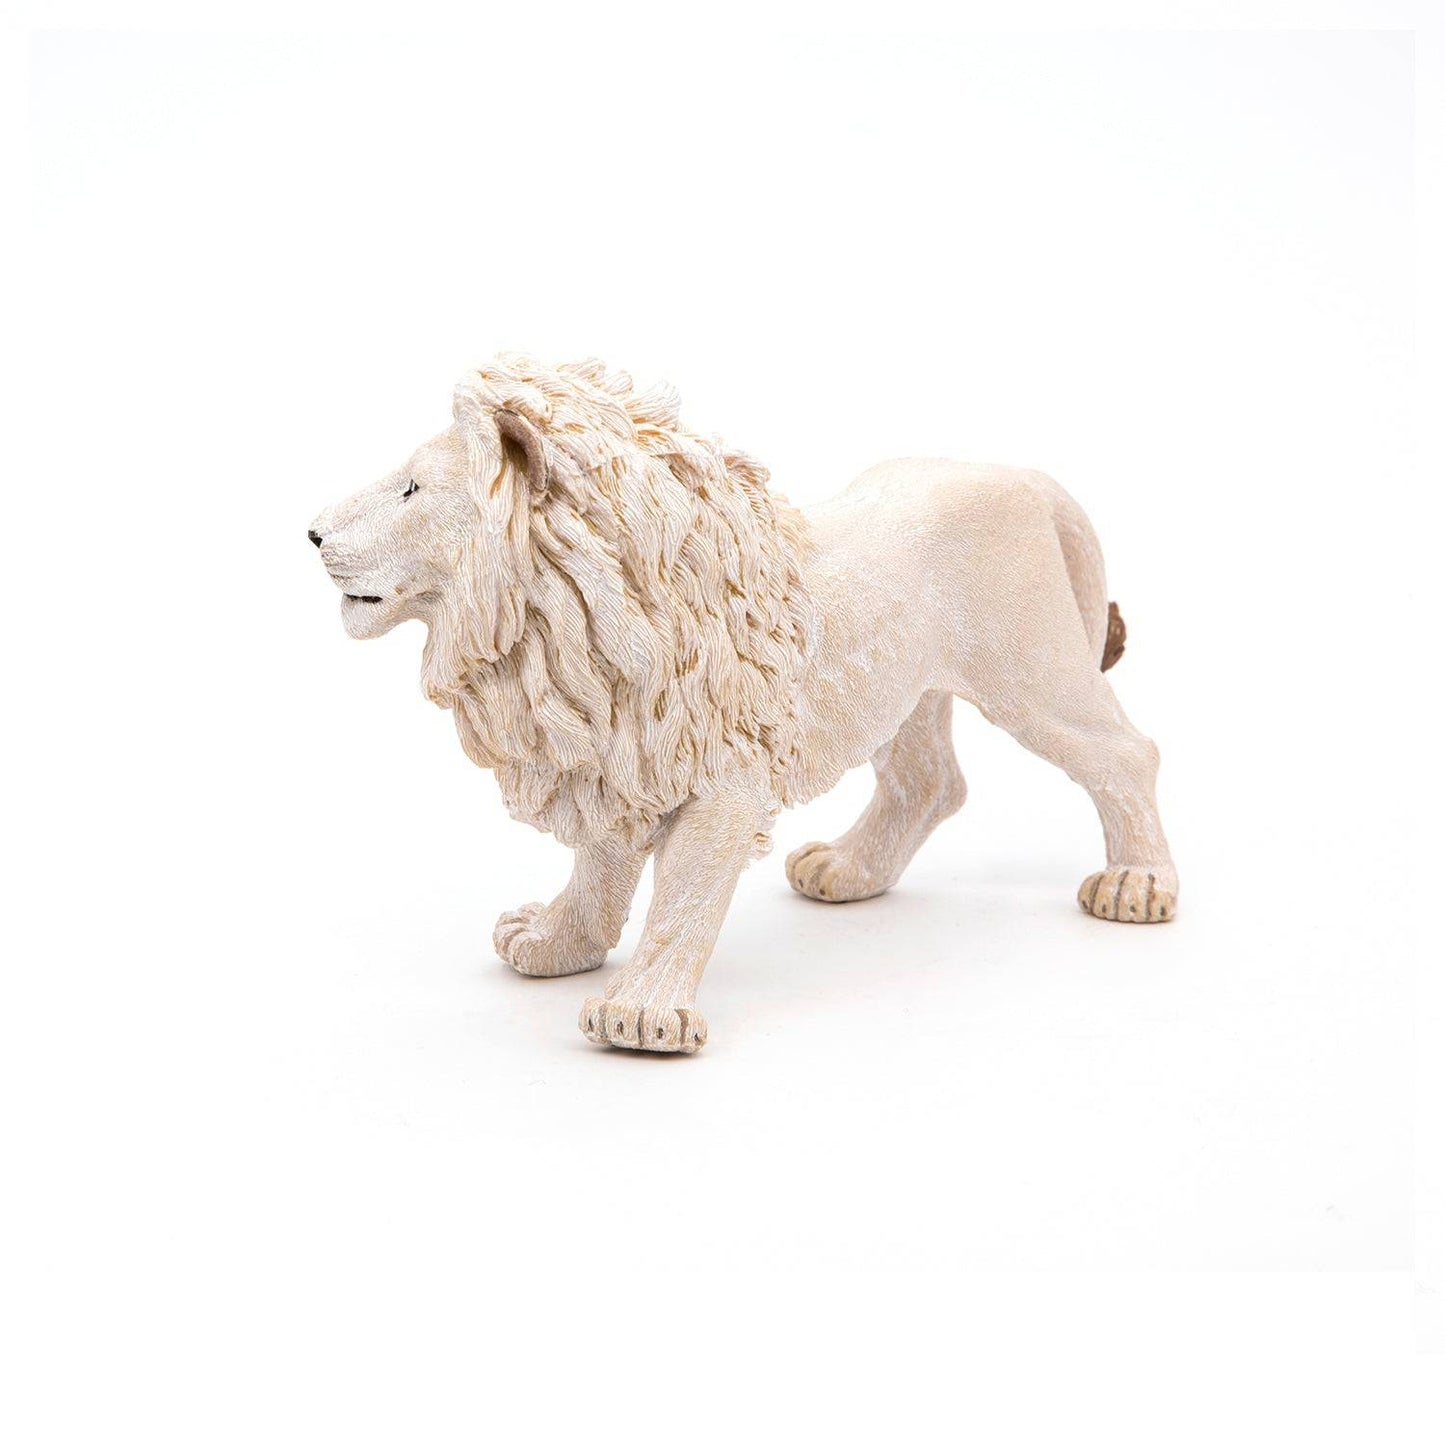 Figurine lion blanc Papo France - Maison Continuum